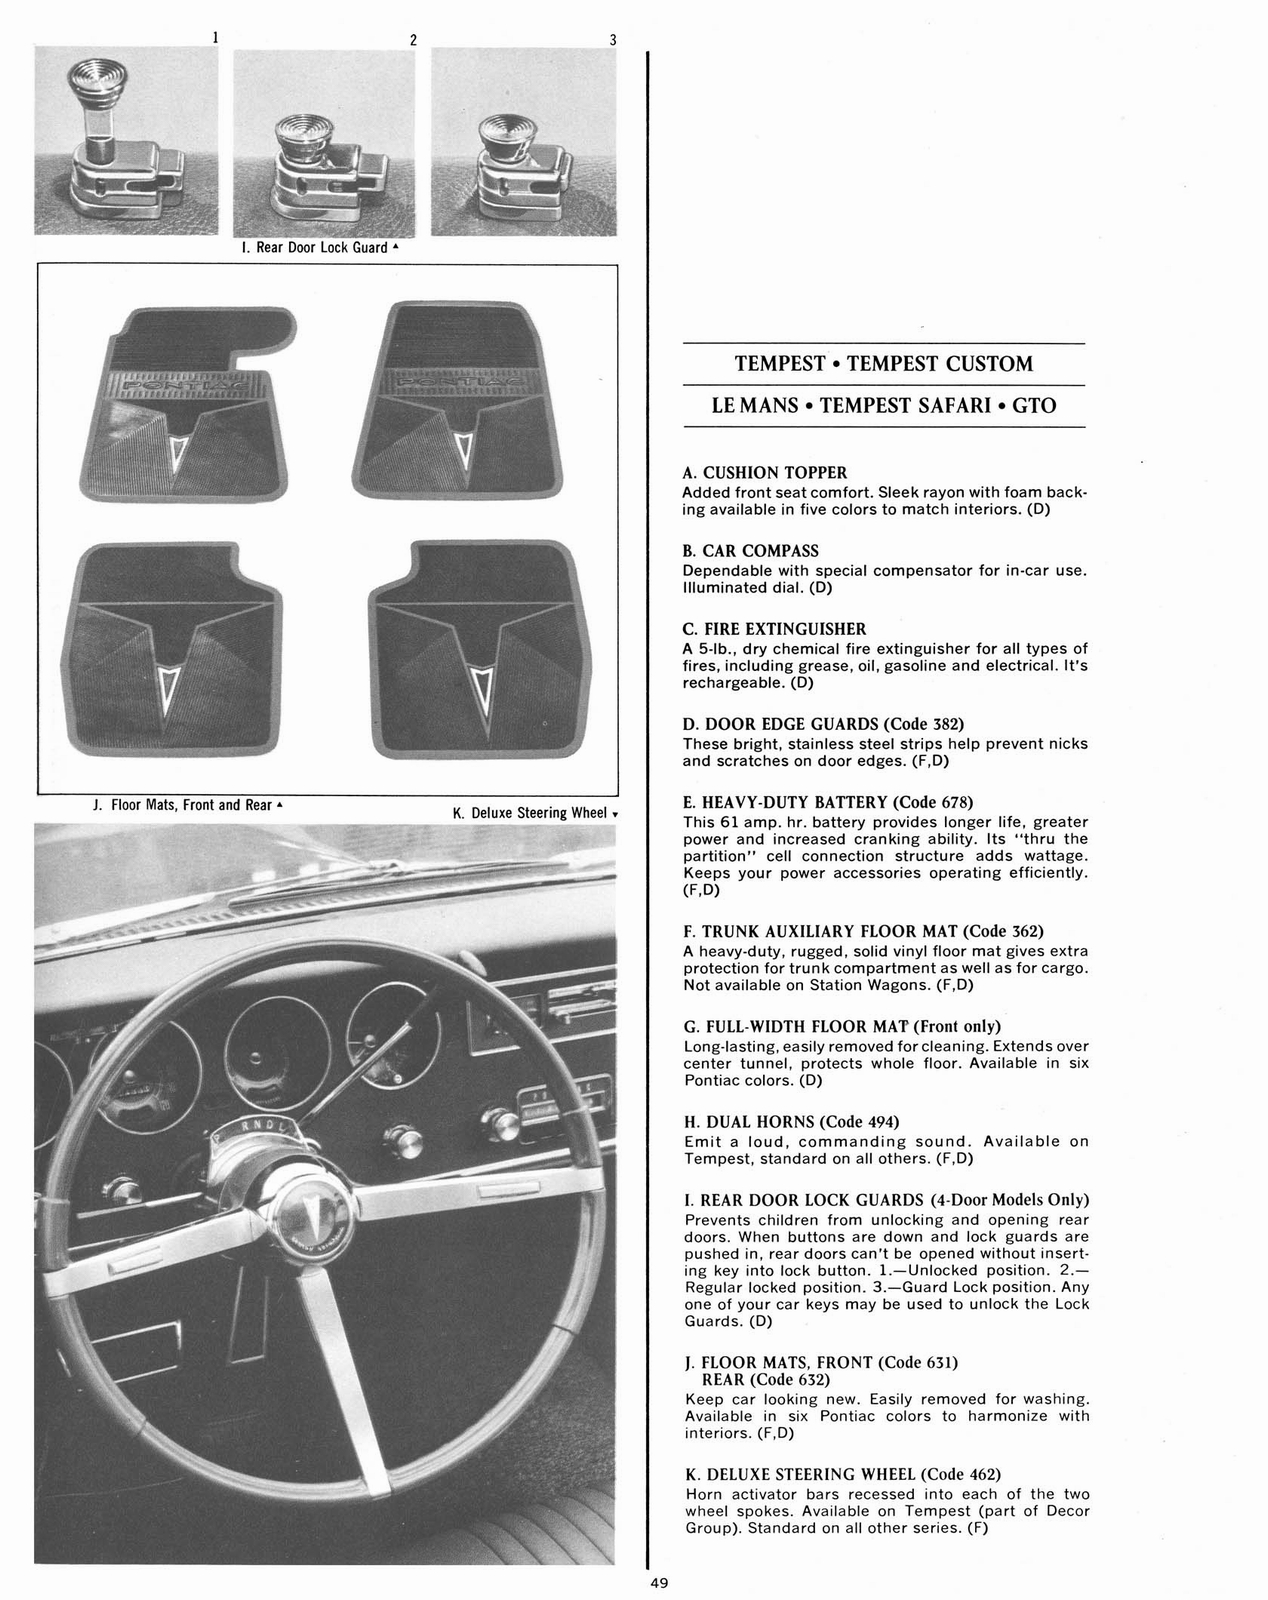 n_1967 Pontiac Accessories-49.jpg